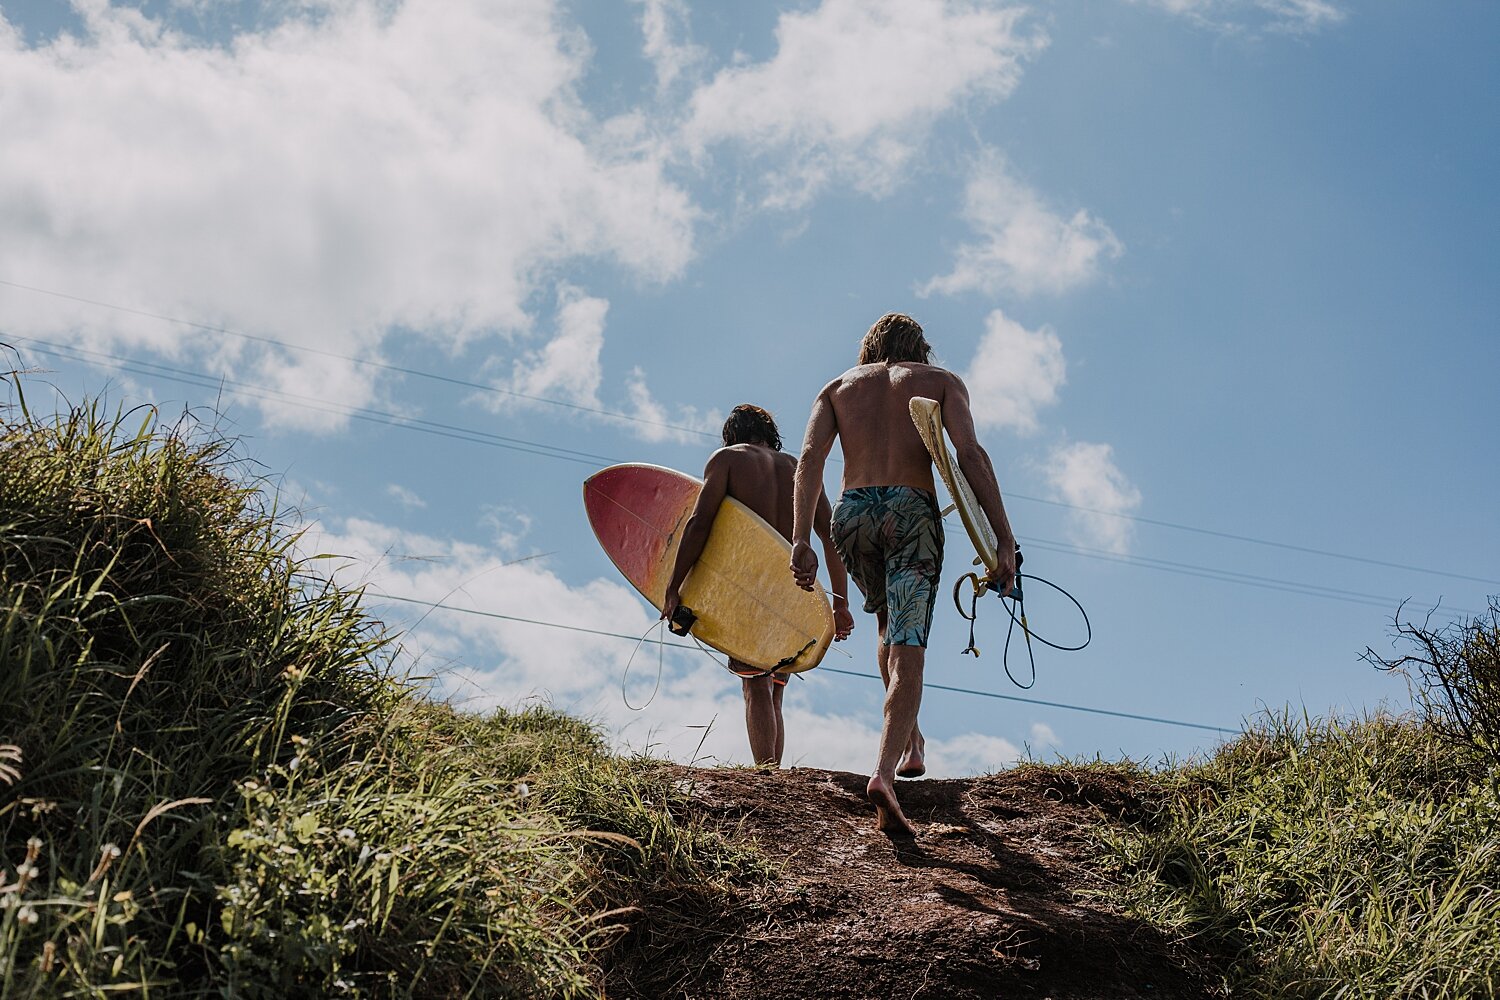 surfers at ho'okipa beach, surfing ho'okipa beach, ho'okipa beach near paia, maui hawaii photographer, maui hawaii surfing, maui hawaii engagements